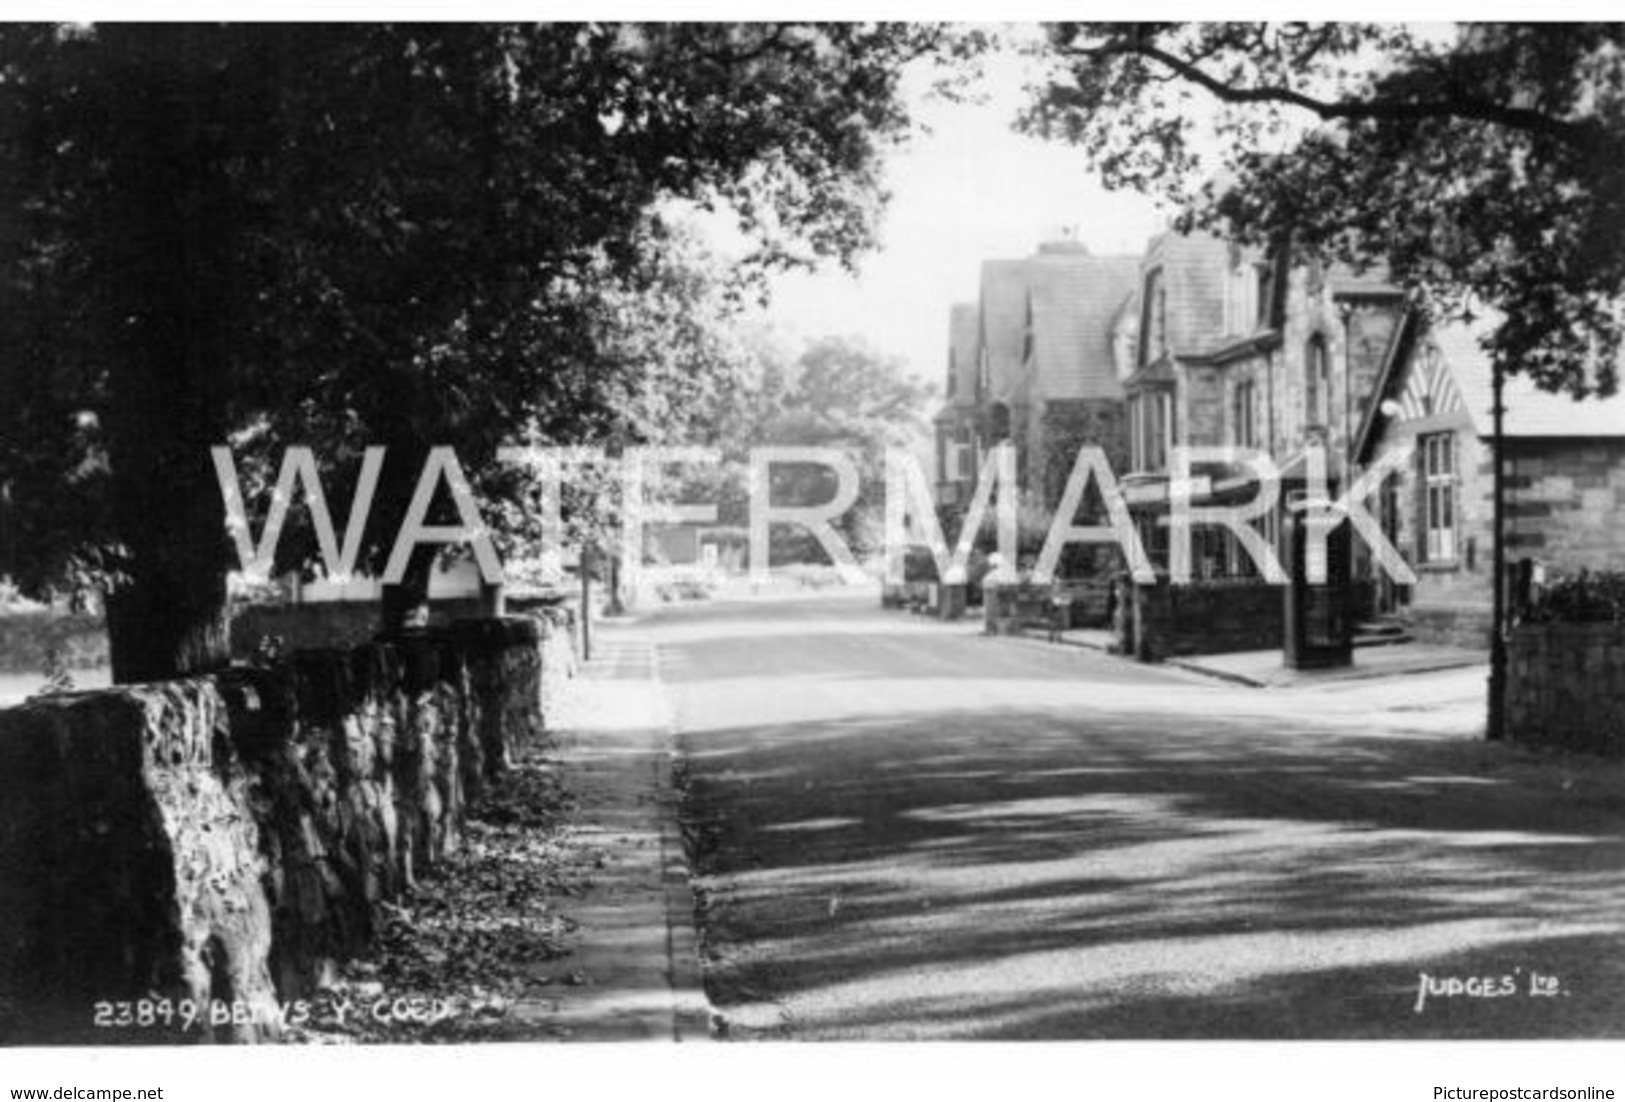 BETWS Y COED OLD R/P POSTCARD WALES - Caernarvonshire